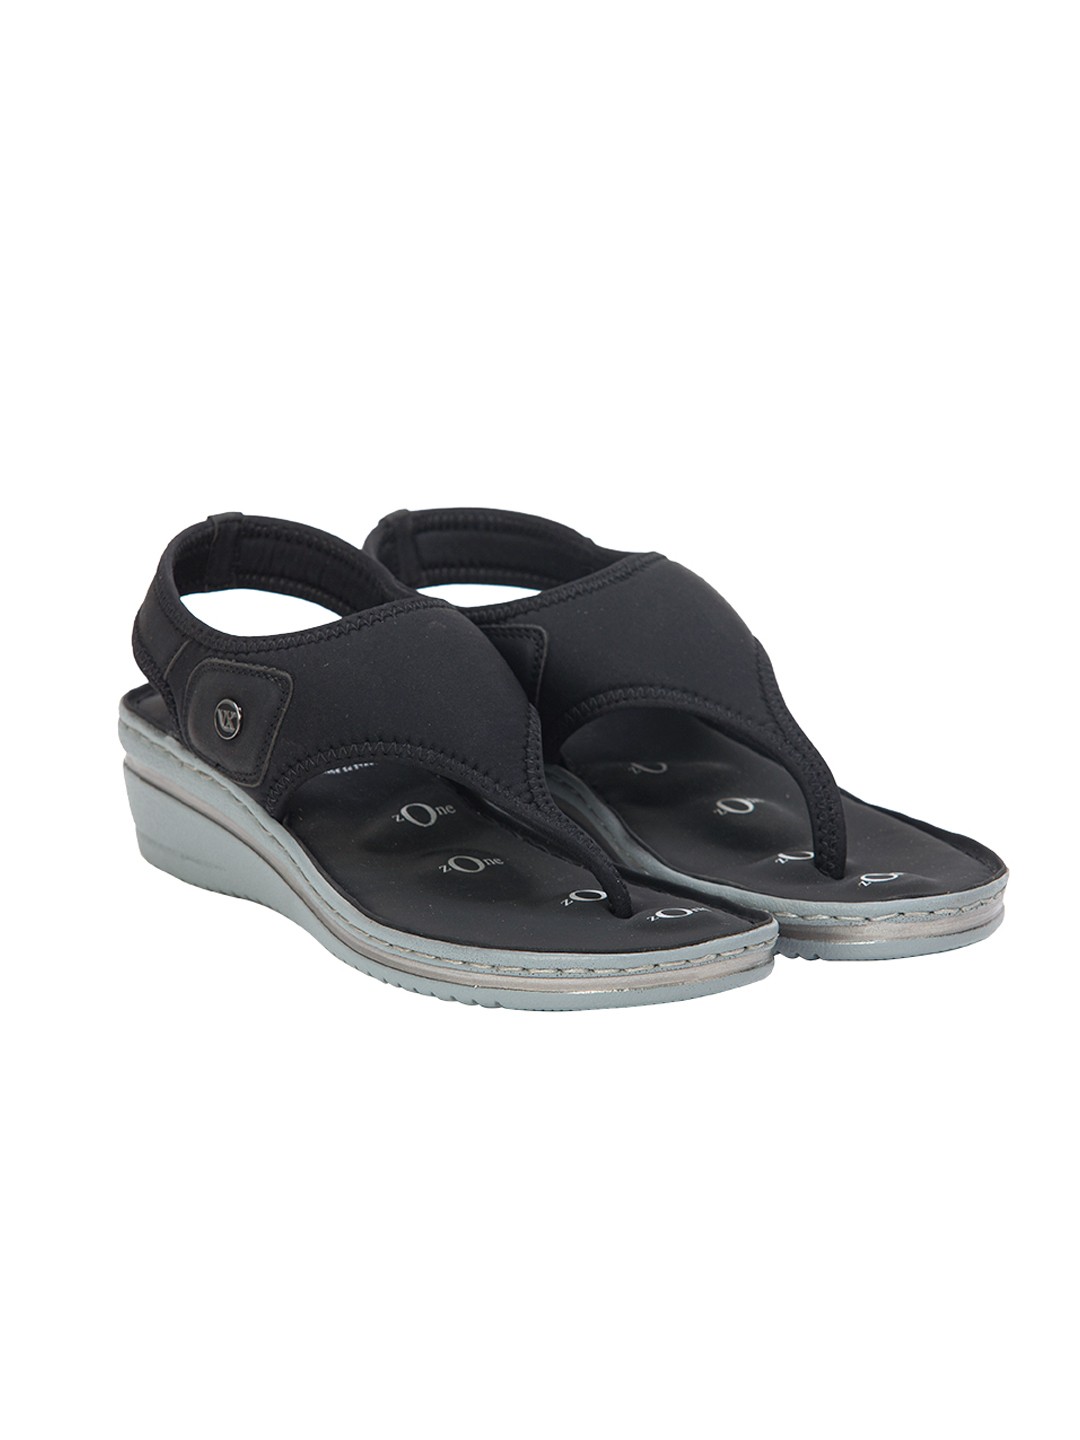 Buy Von Wellx Germany Comfort Della Black Sandals Online in Bangalore